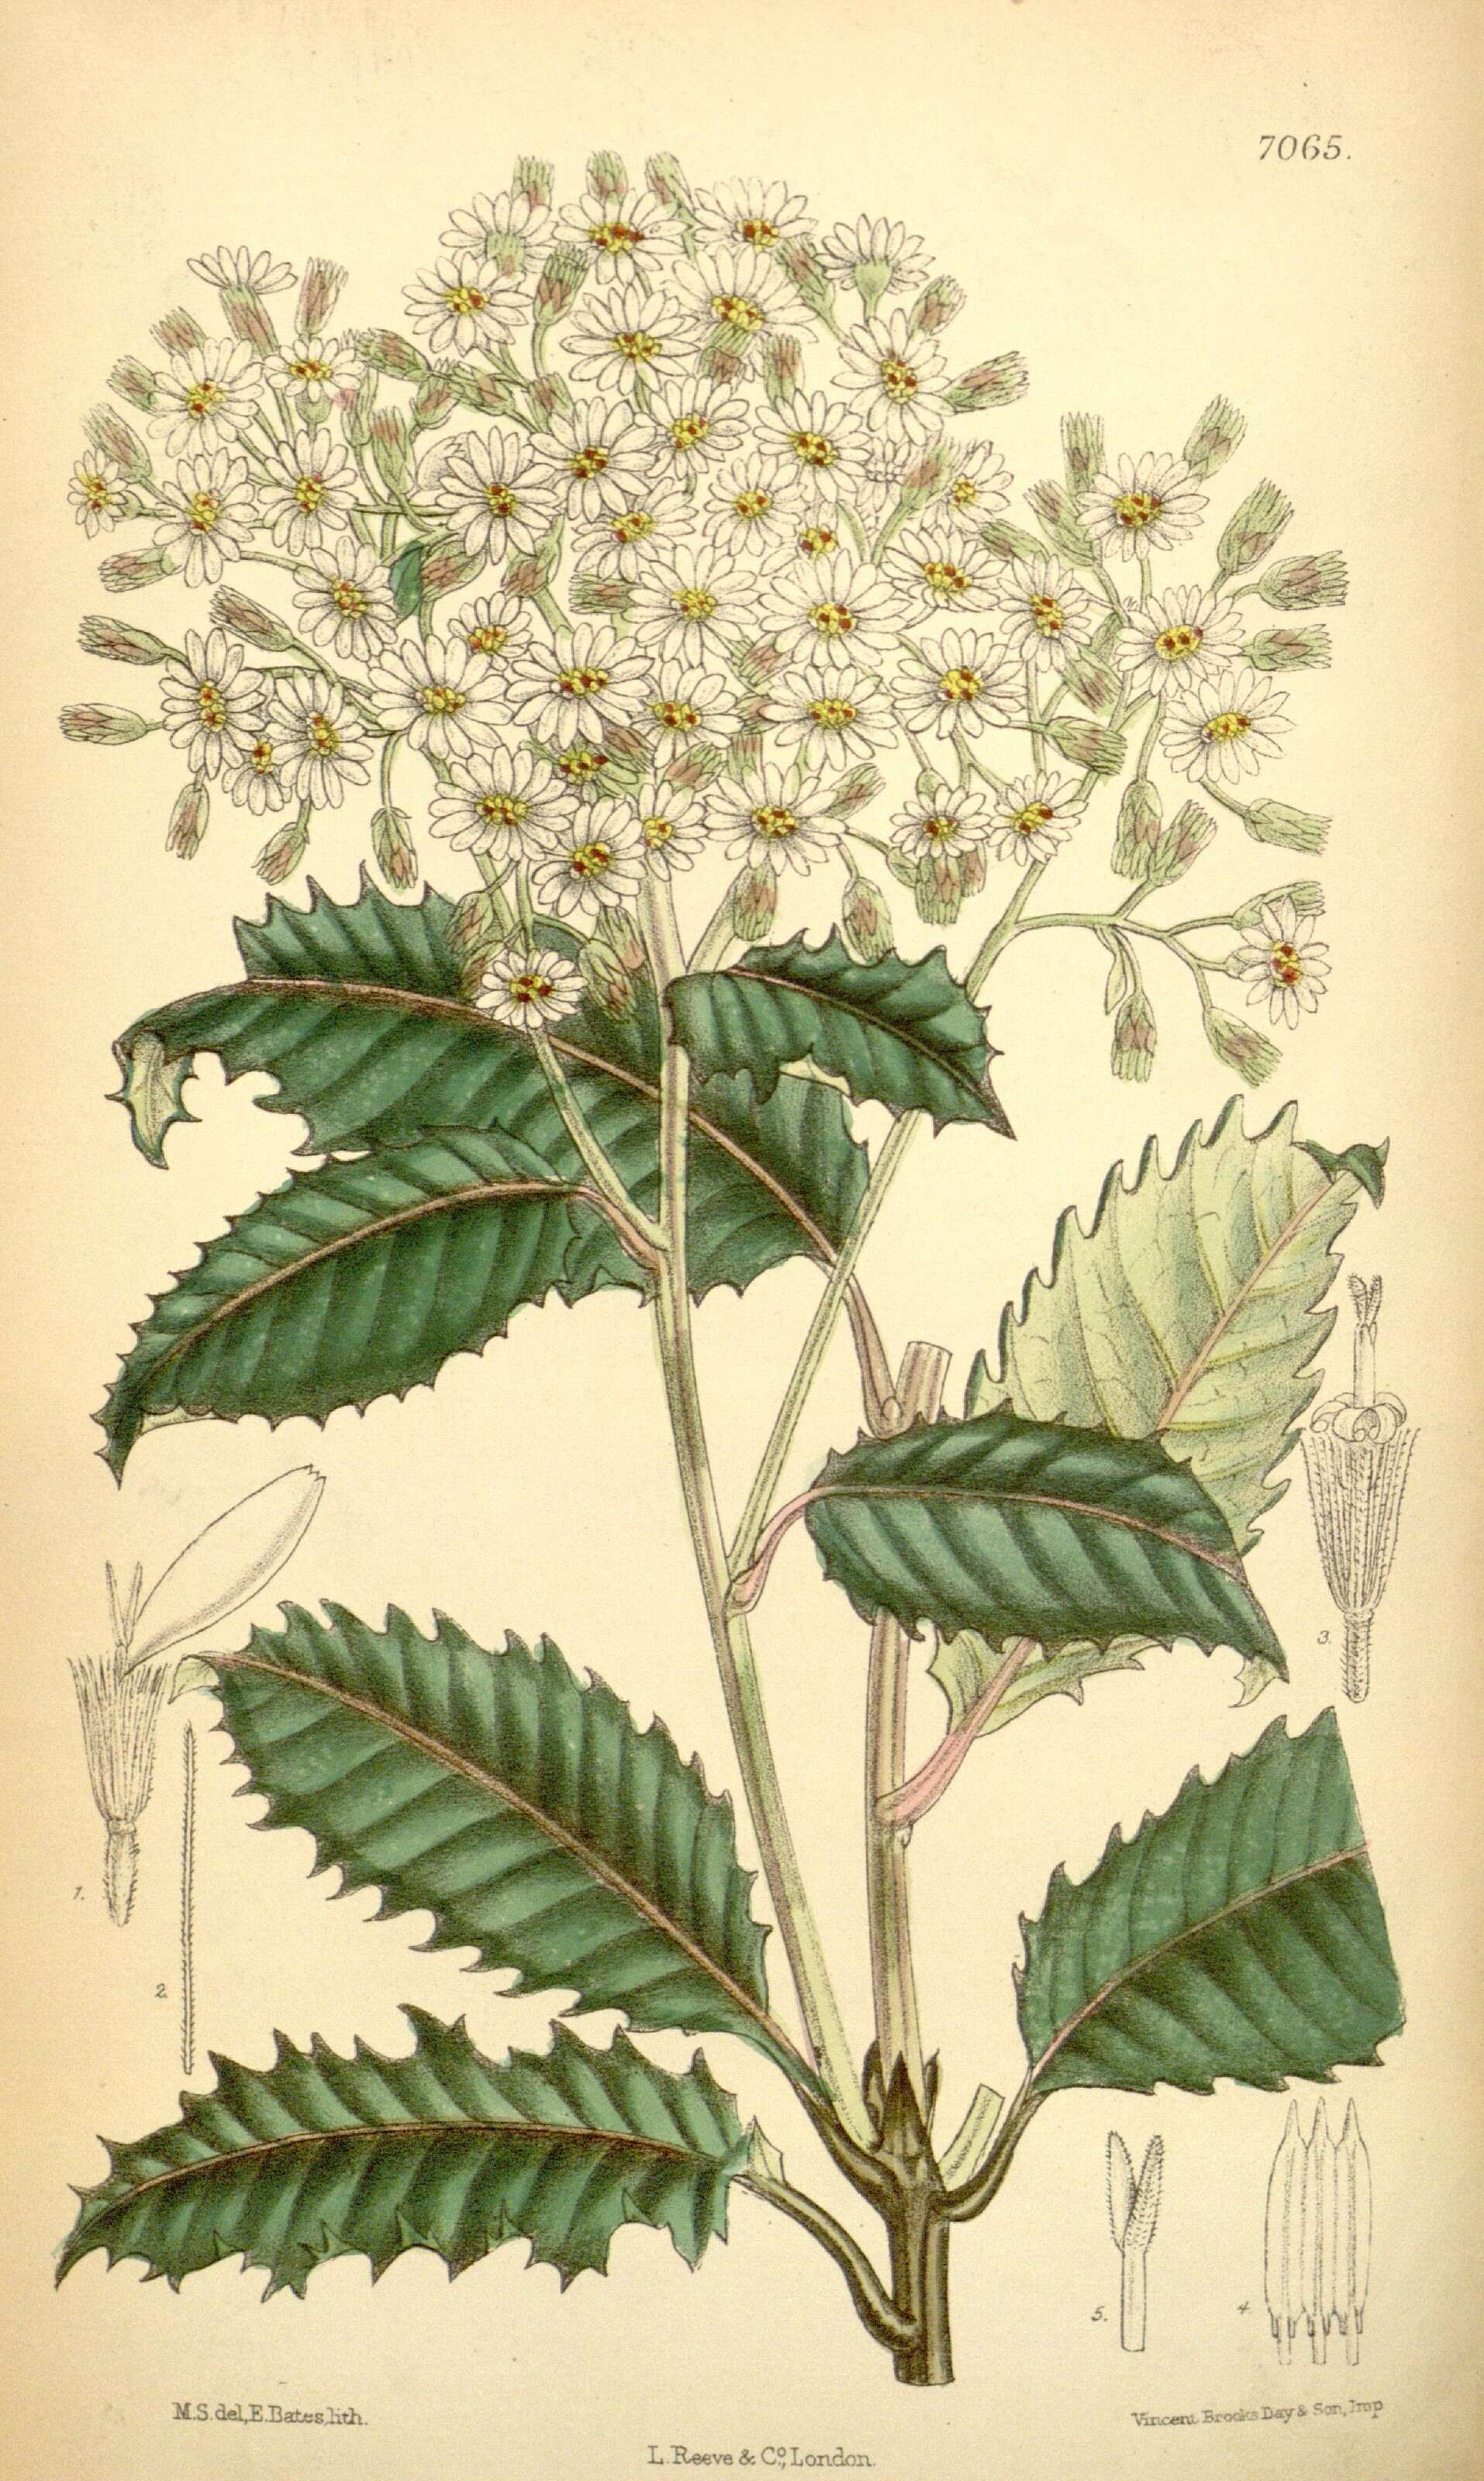 Image of daisy bush